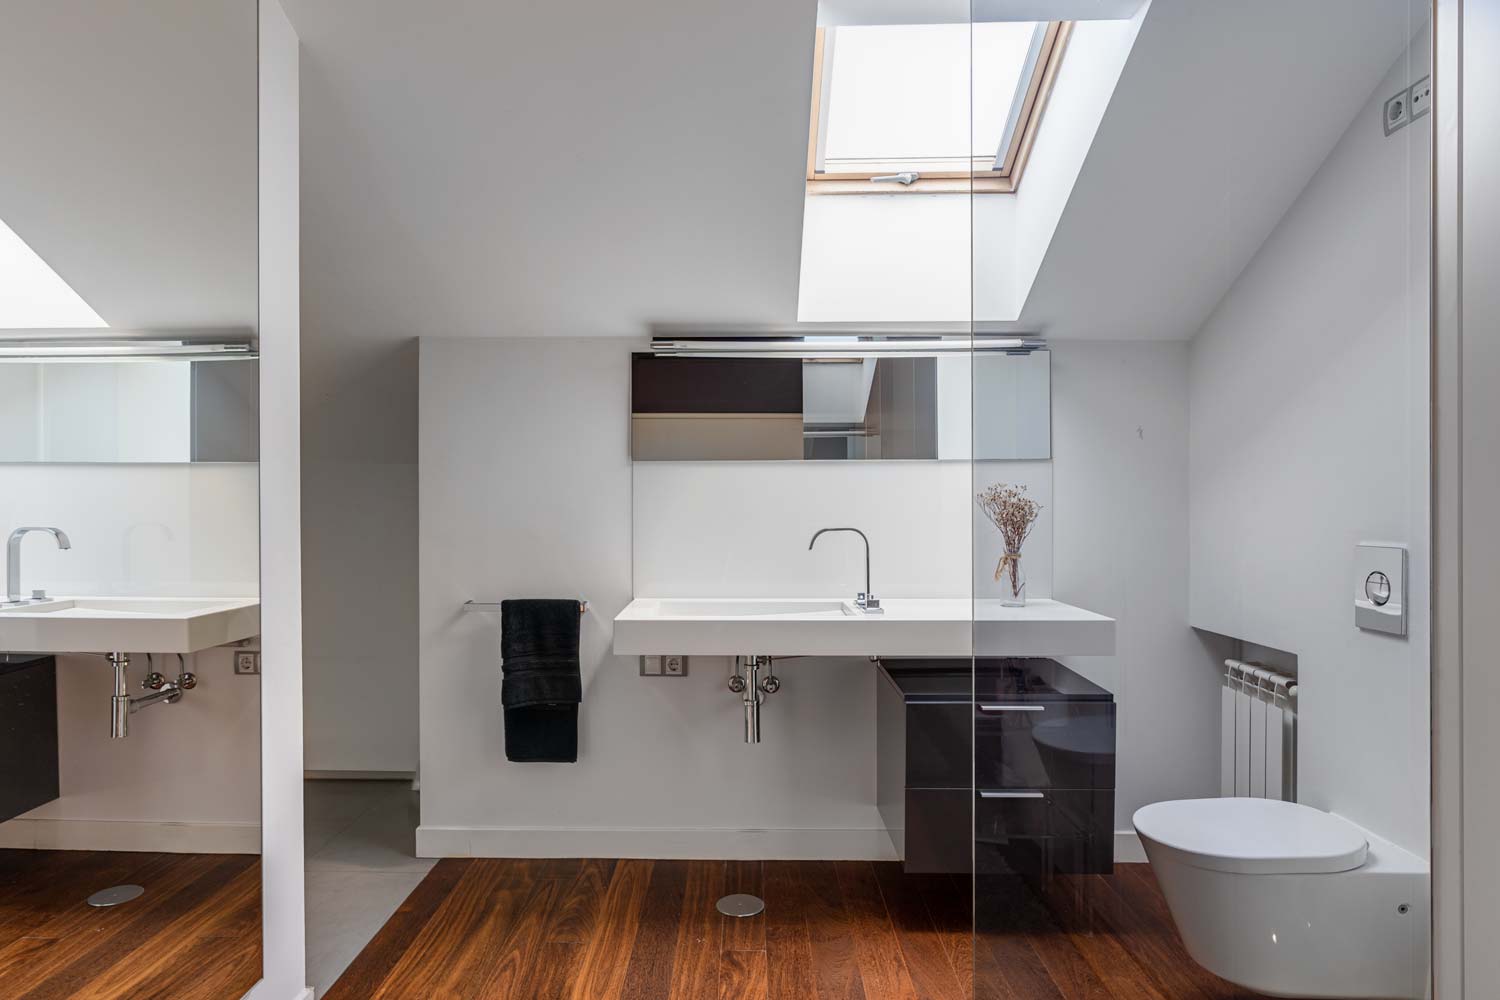 Vista general cuarto de baño planta alta vivienda unifamiliar Oleiros_lavabo y mueble suspendido con suelo de madera y mampara de vidrio